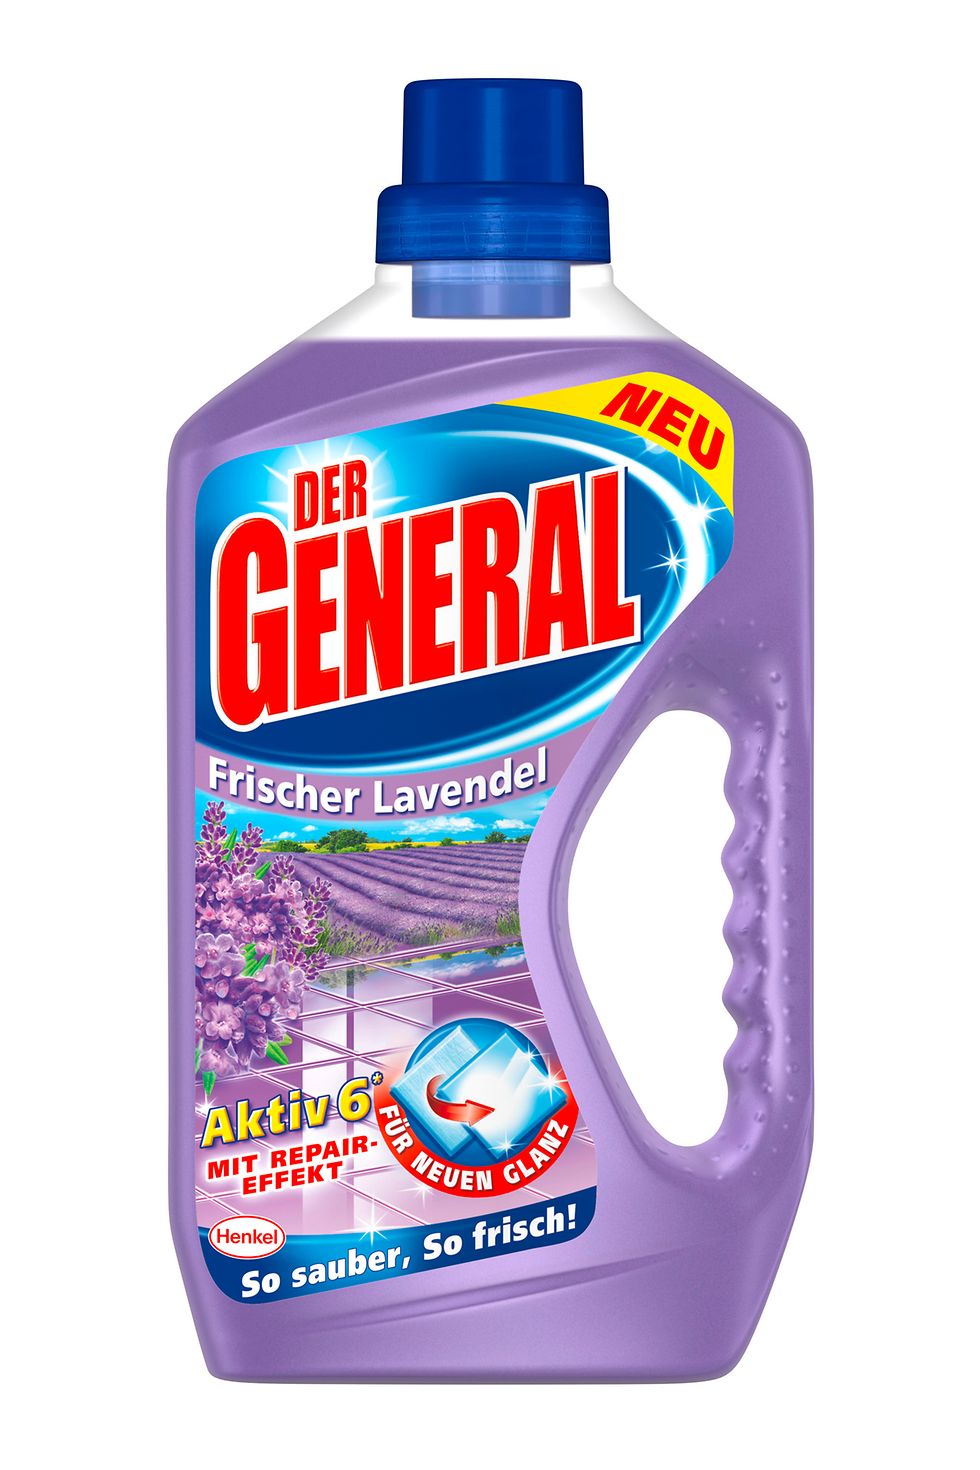 Der General Aktiv 6 Frischer Lavendel